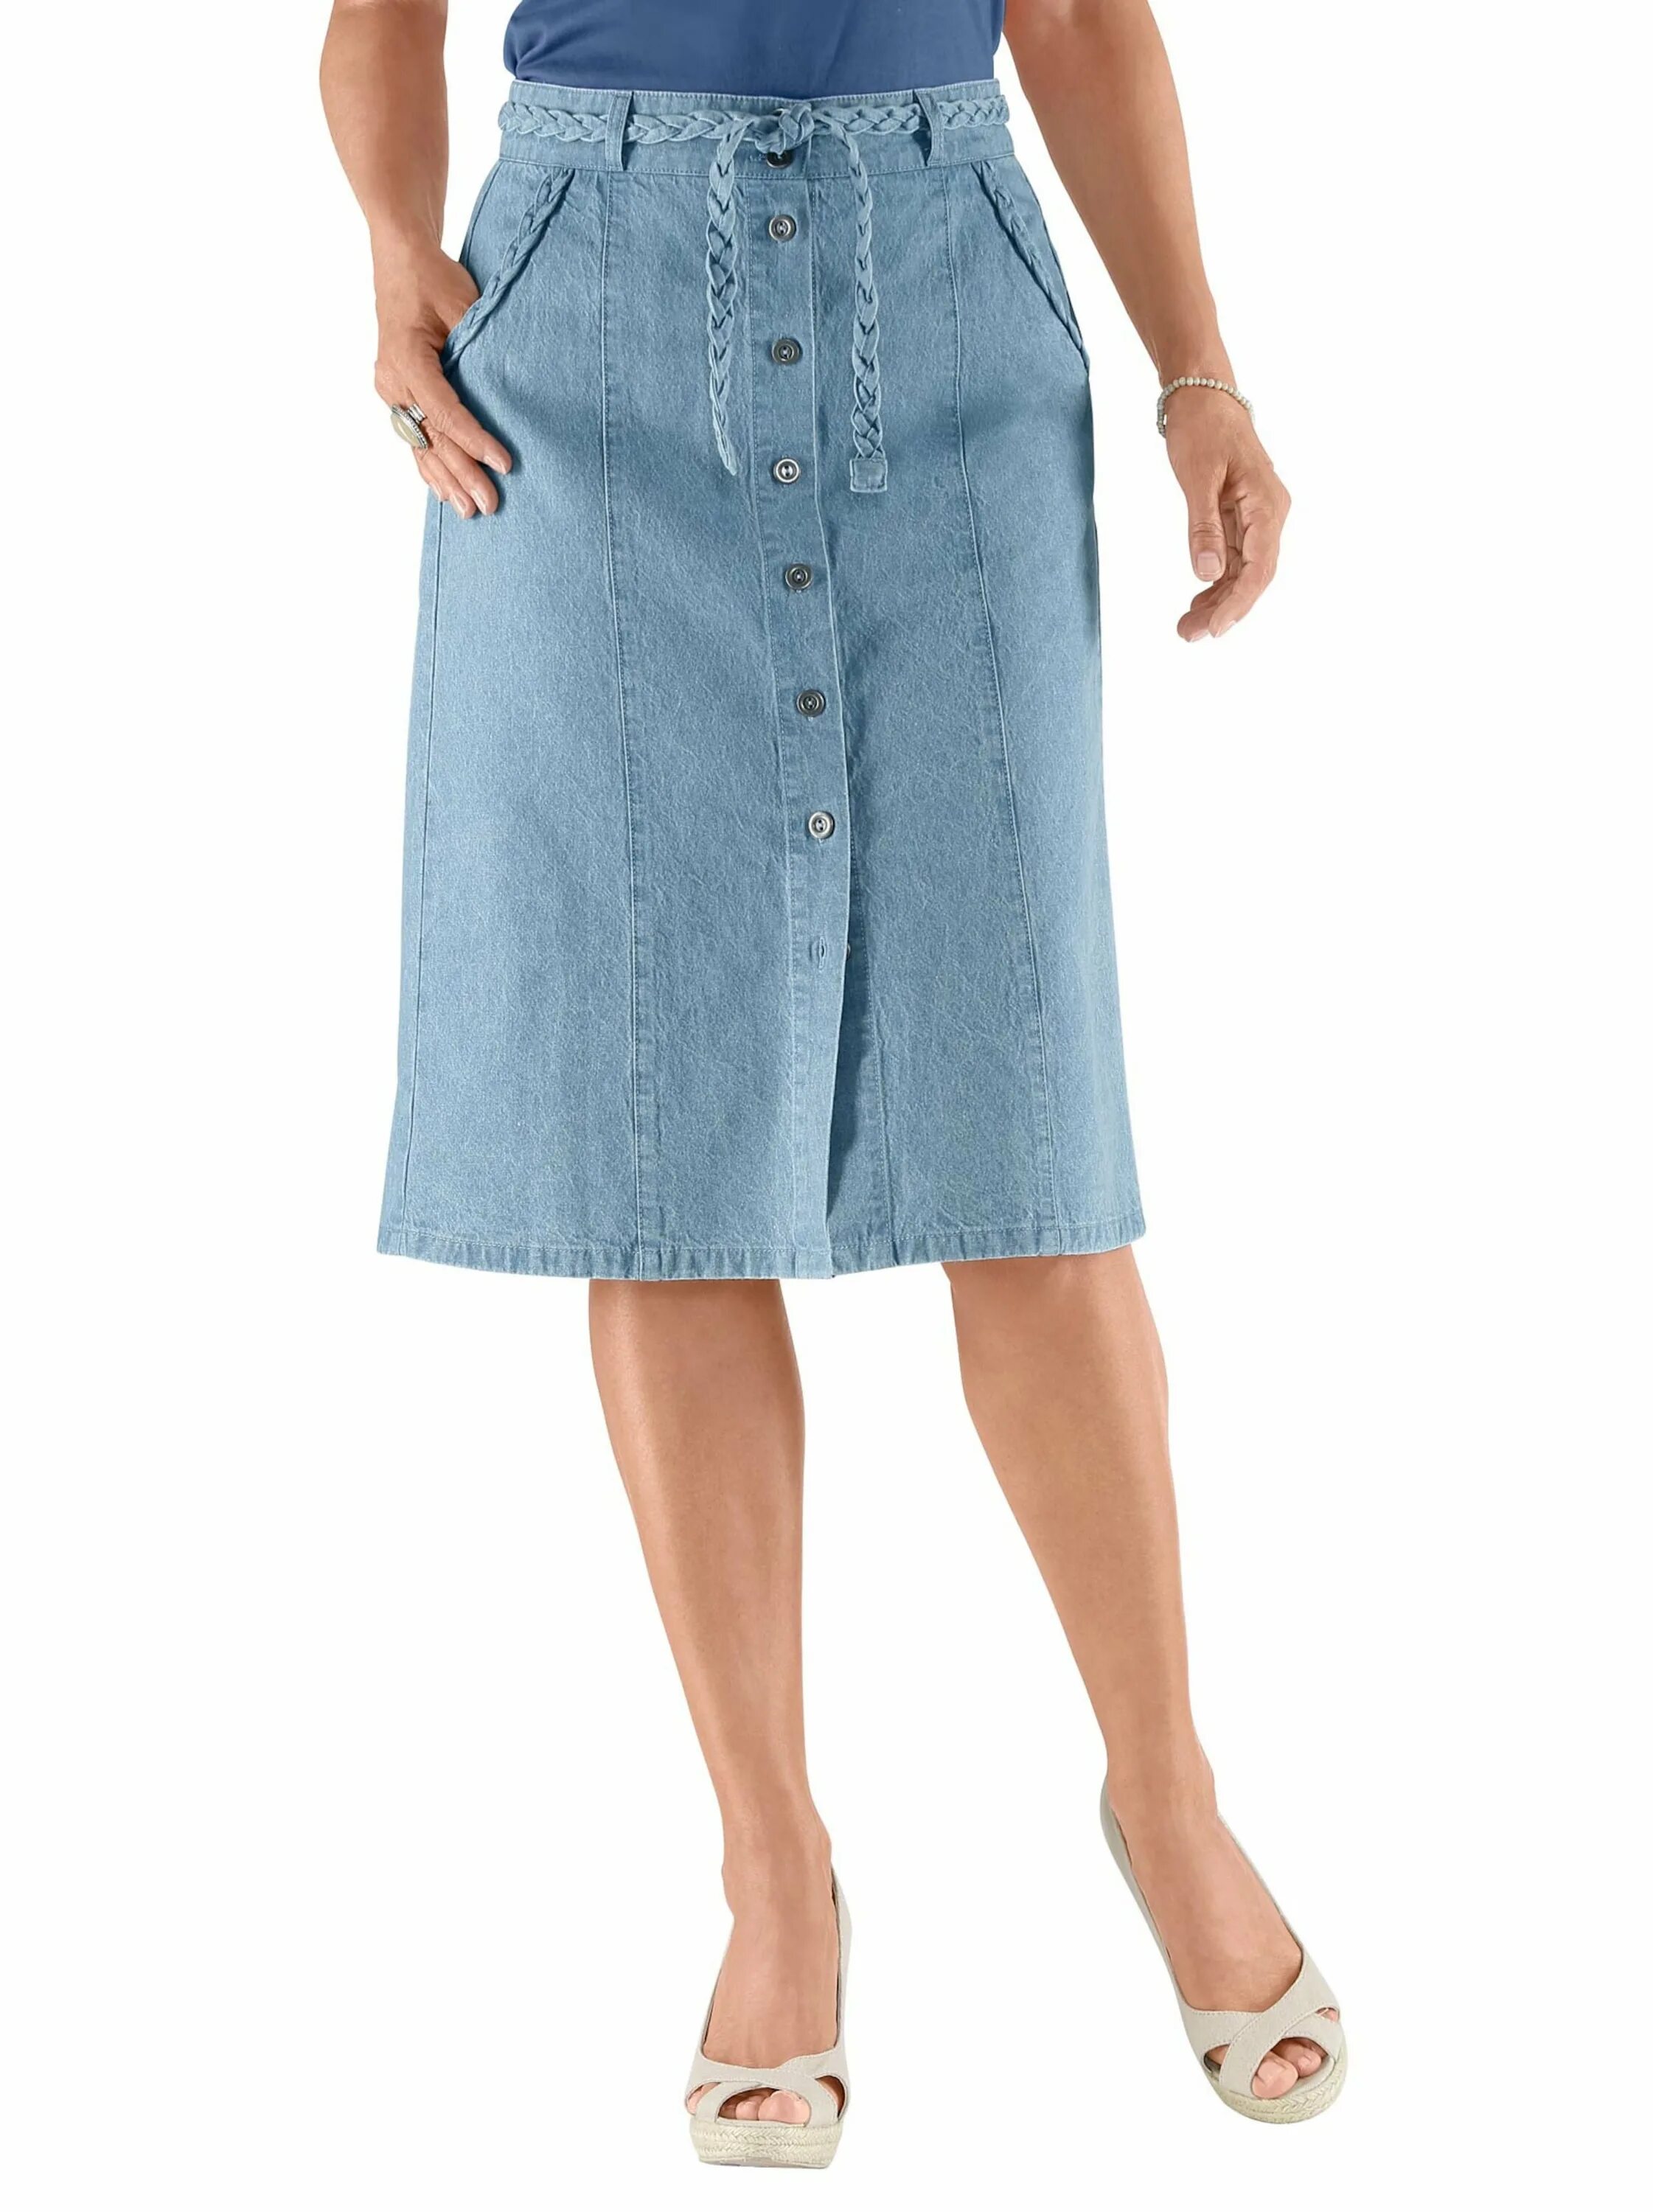 Валберис джинсовые юбки миди. Валберис джинсовые юбки женские. Валберис юбки джинсовые для полных. Валберис юбка джинсовая 52 размер женская.